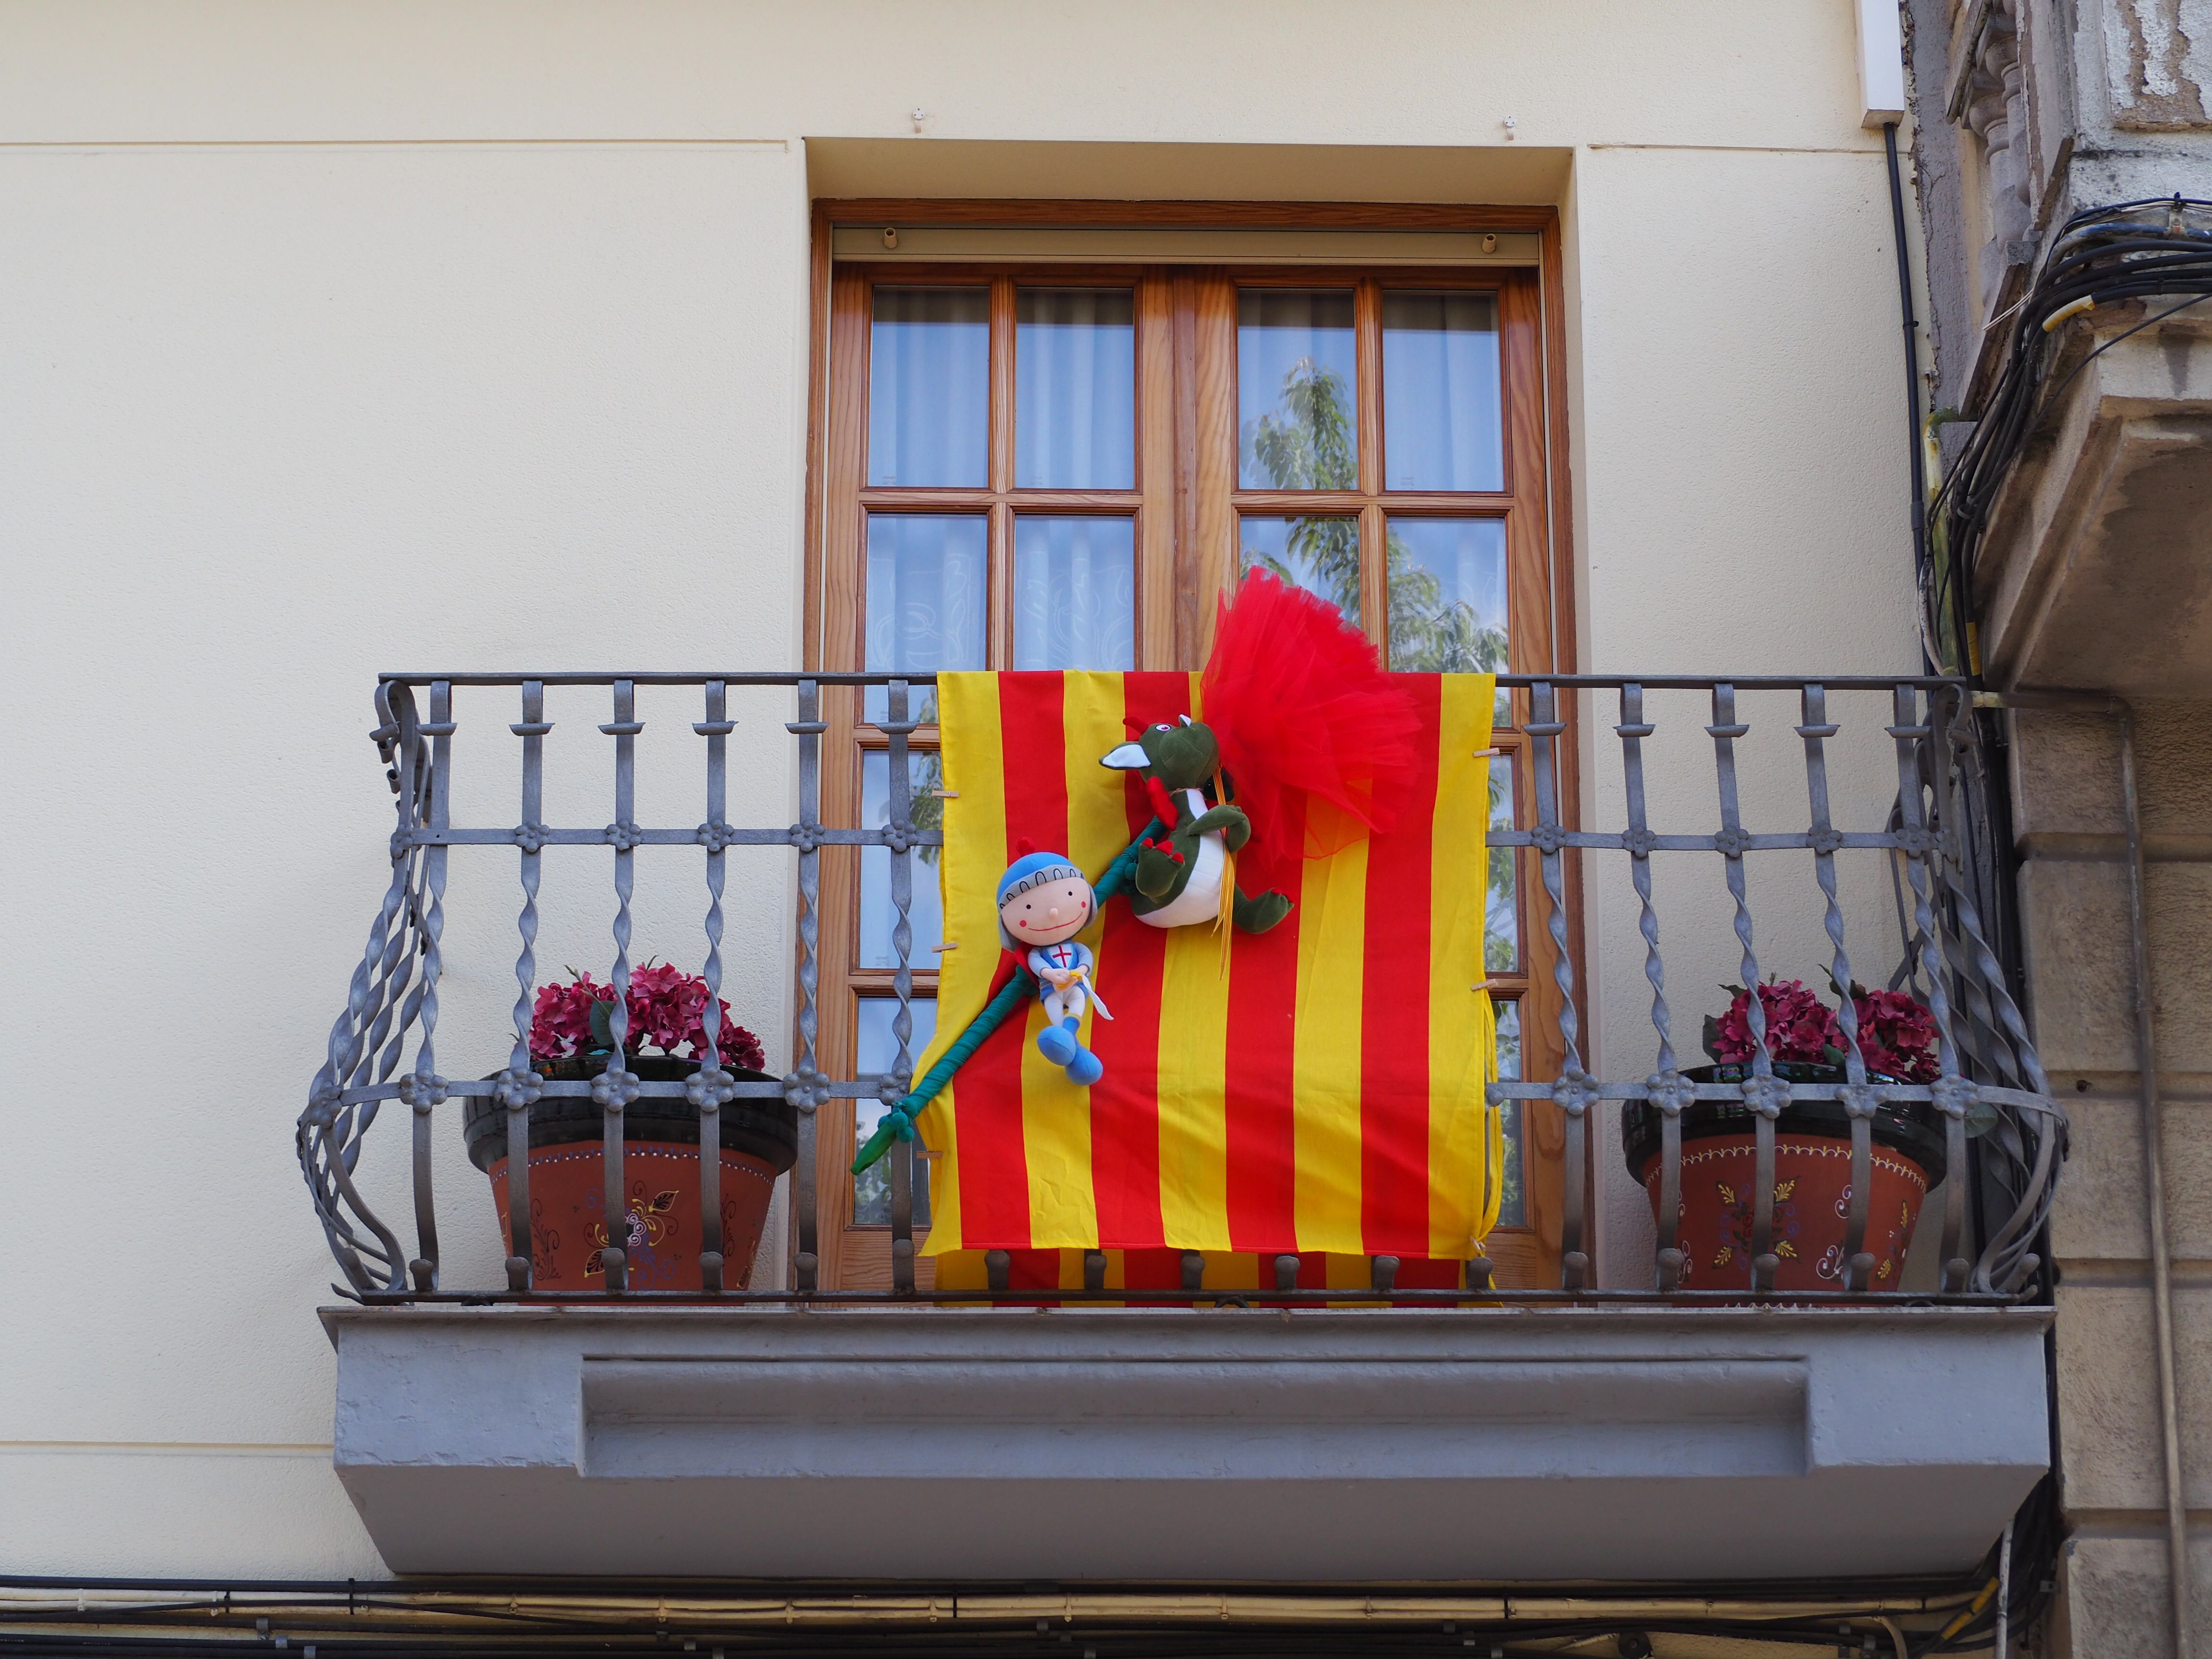 Balcons cerdanyolencs decorats per Sant Jordi. FOTO: Mónica García Moreno